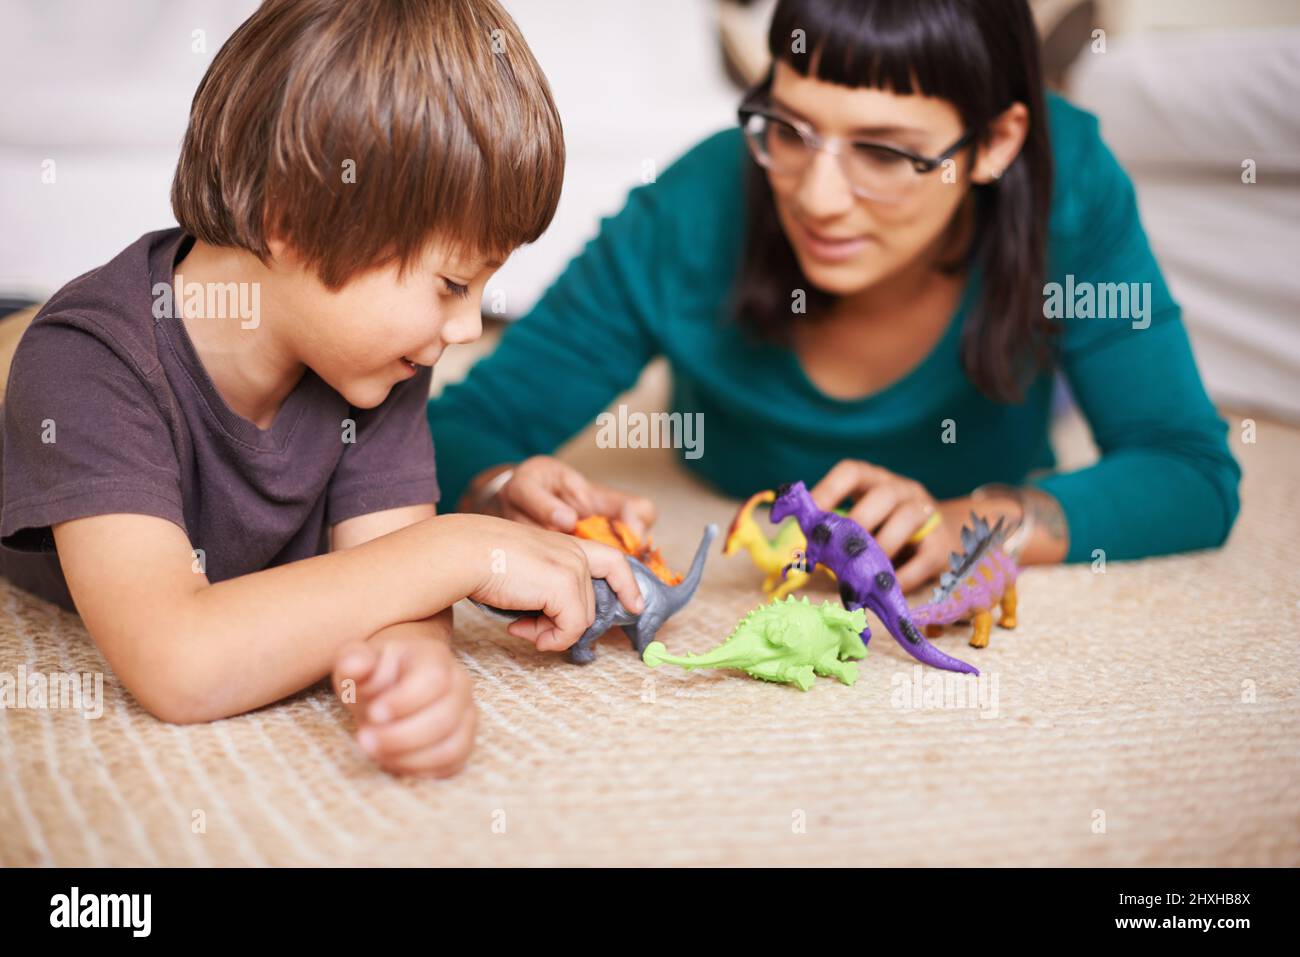 Dinosaurier spielen mit Mama. Ausgeschnittene Aufnahme einer Mutter und ihres Sohnes, die mit Spielzeug-Dinosauriern spielen. Stockfoto